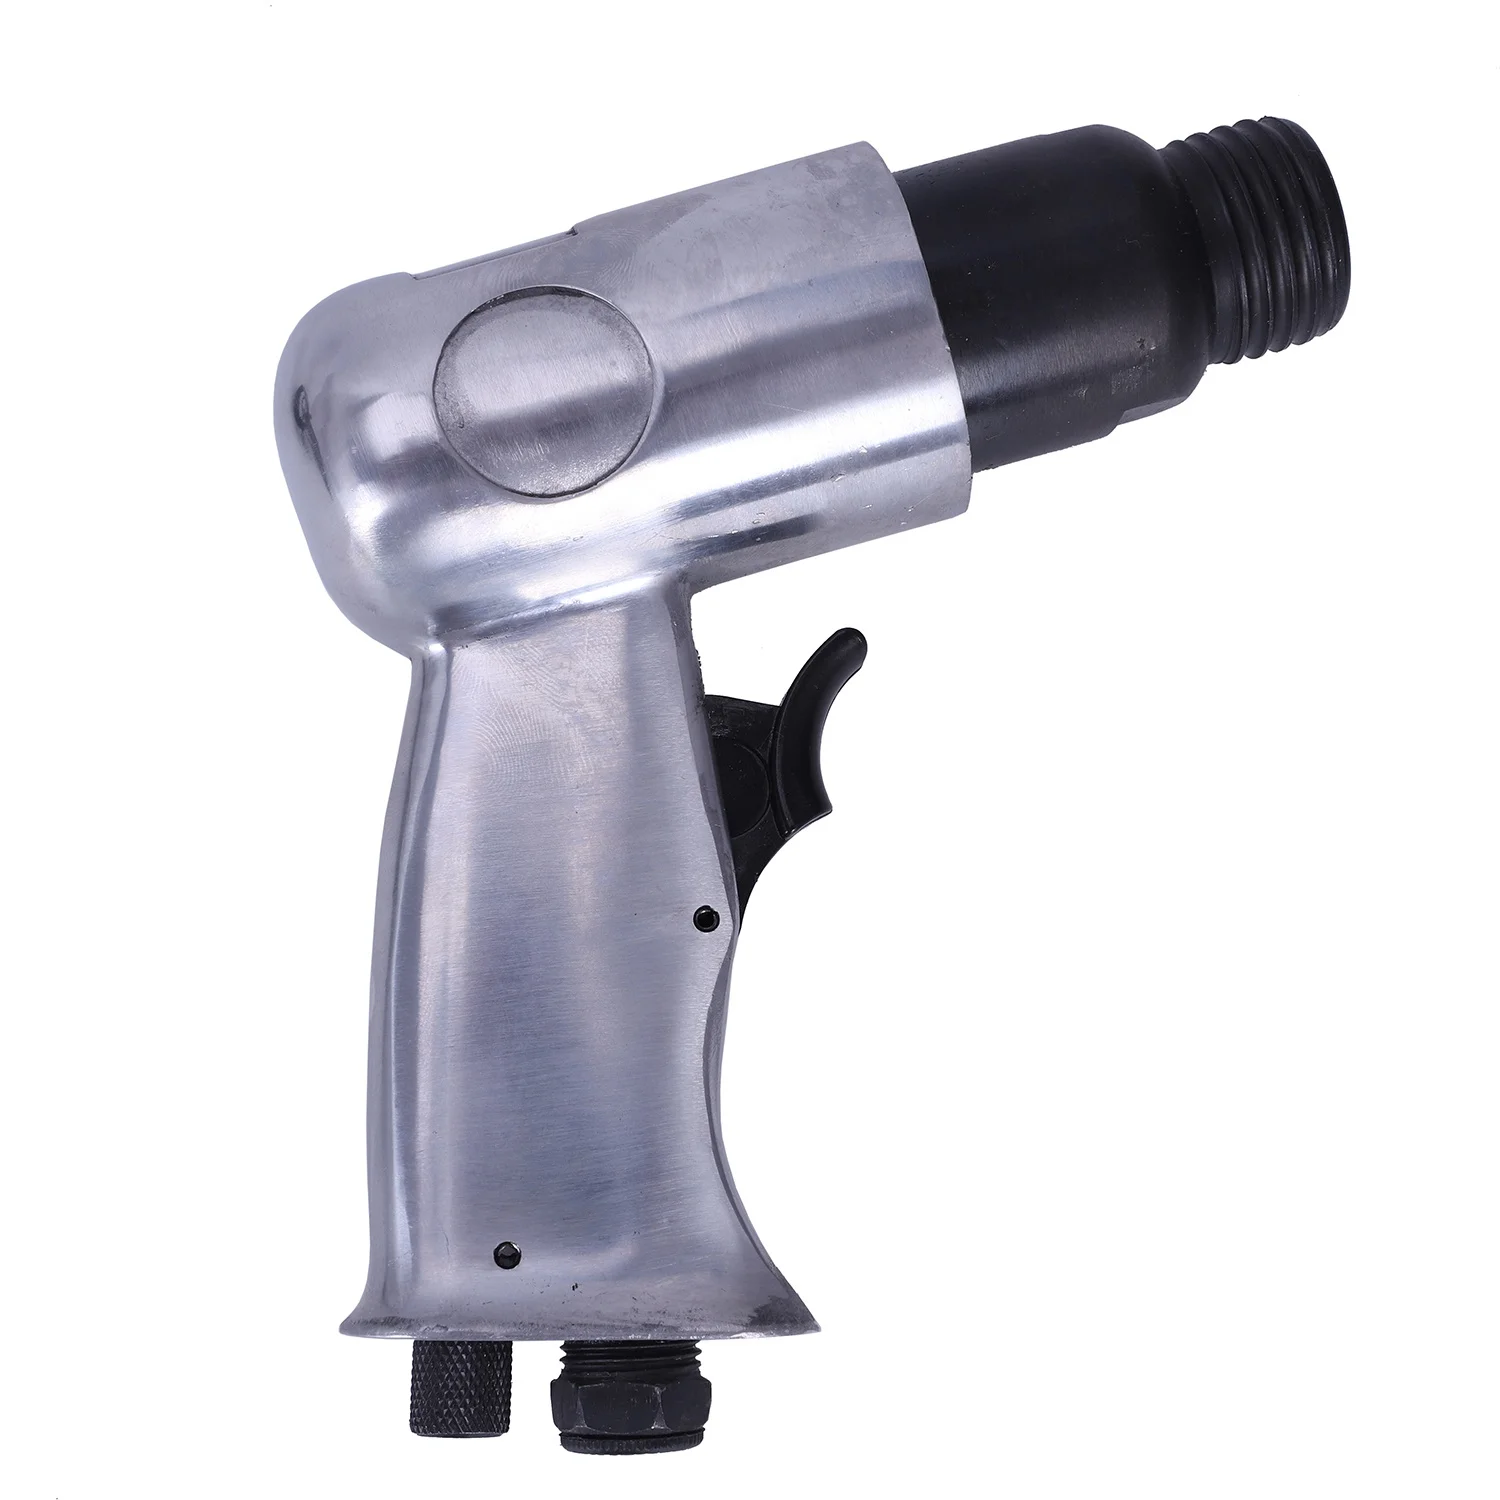 HHO-150mm Профессиональный Ручной Пистолет Газовые лопаты воздушный молоток небольшой для удаления ржавчины резка бурение сколы пневматические инструменты